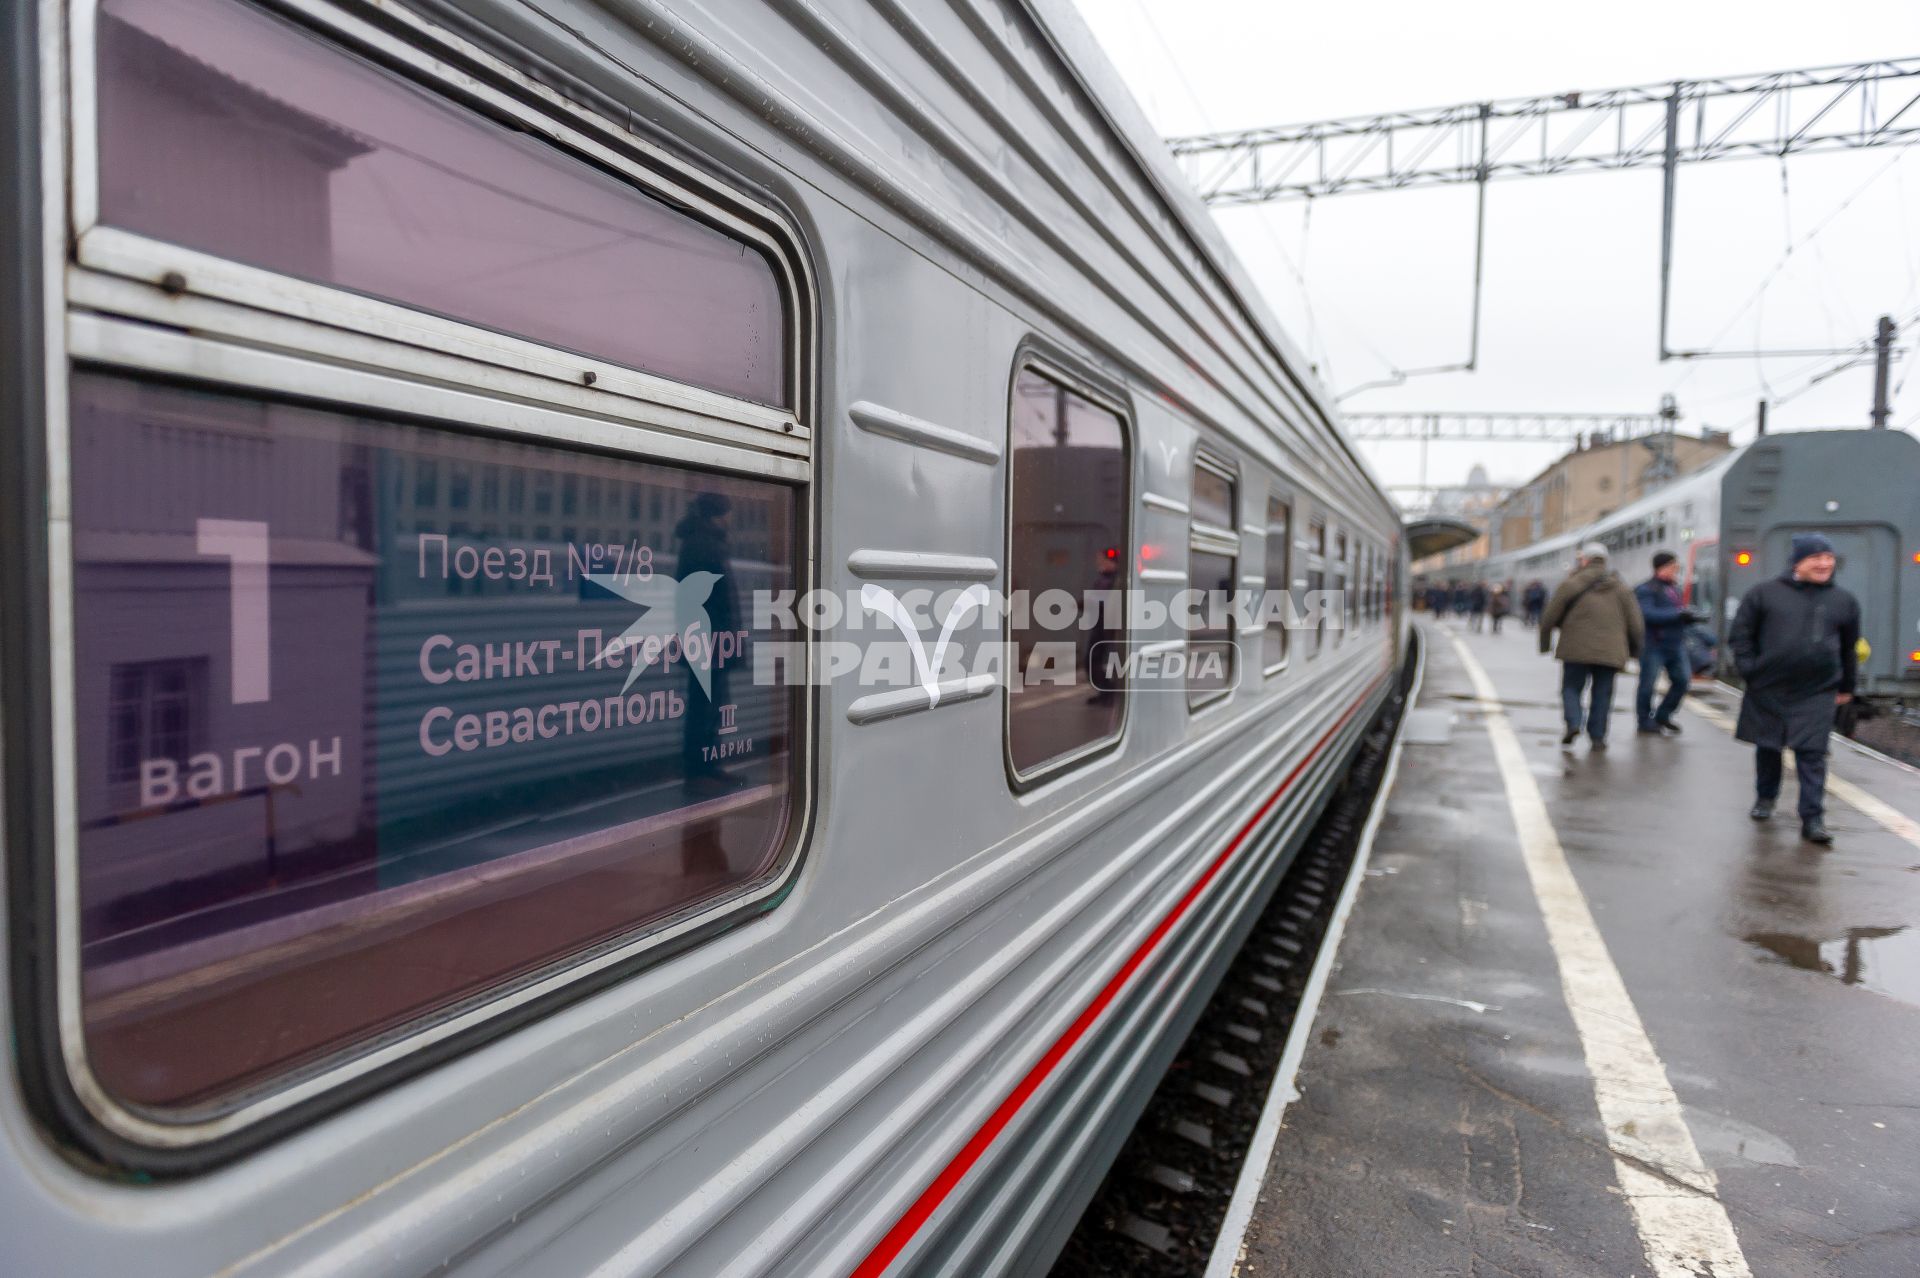 Санкт-Петербург. Отправление первого пассажирского поезда из Санкт-Петербурга в Севастополь через Крымский мост.